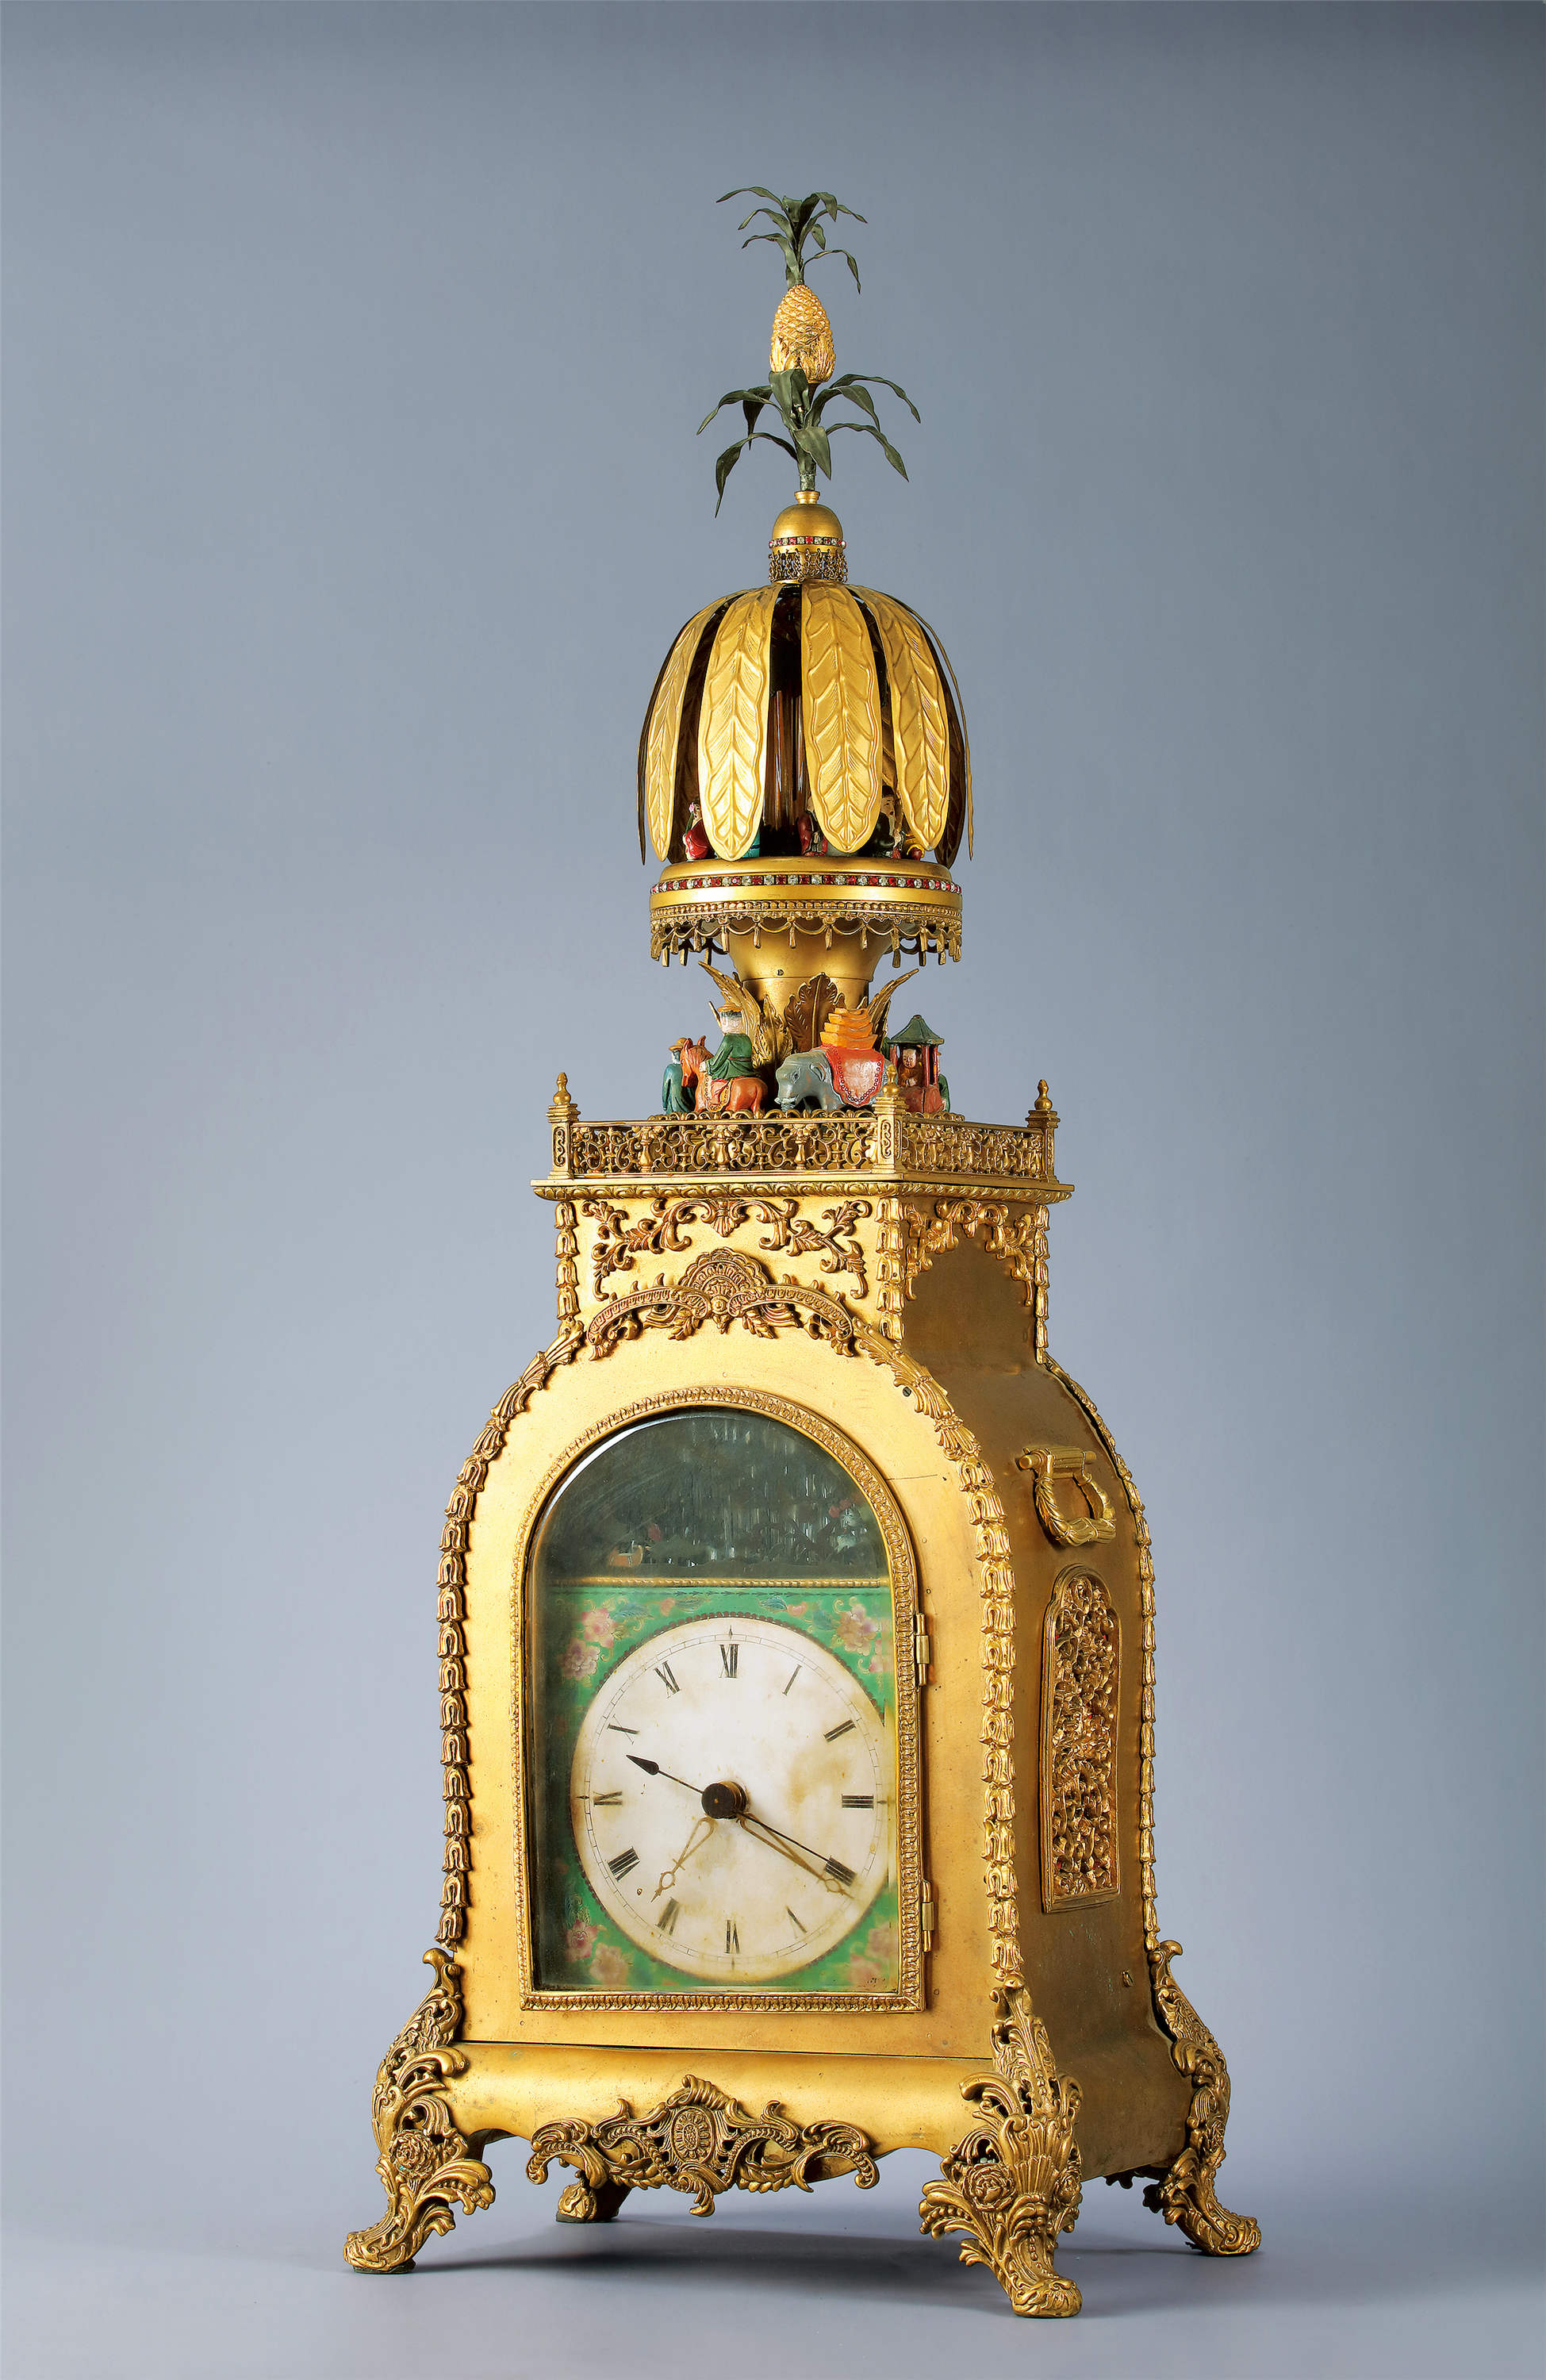 尺寸高86cm拍品描述近代机械钟表最早出现于14世纪,1656年荷兰发明了